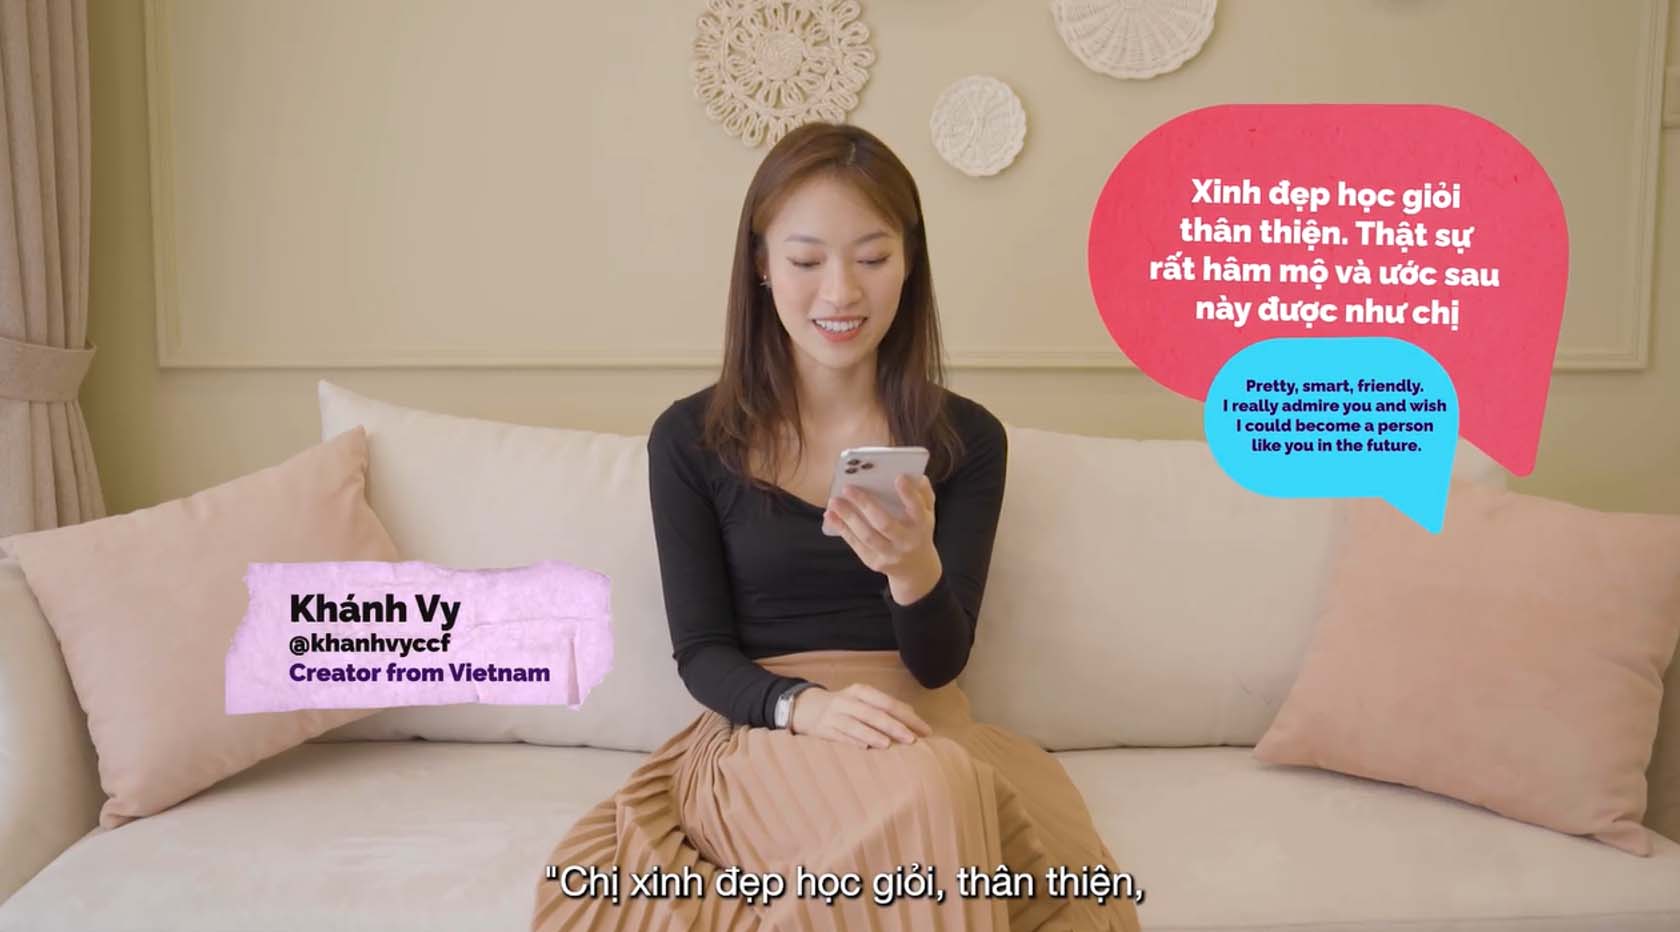 TikTok #CreateKindness Conversations - Buổi phát trực tiếp nâng cao nhận thức cộng đồng về bắt bắt nạt trực tuyến ở Việt Nam